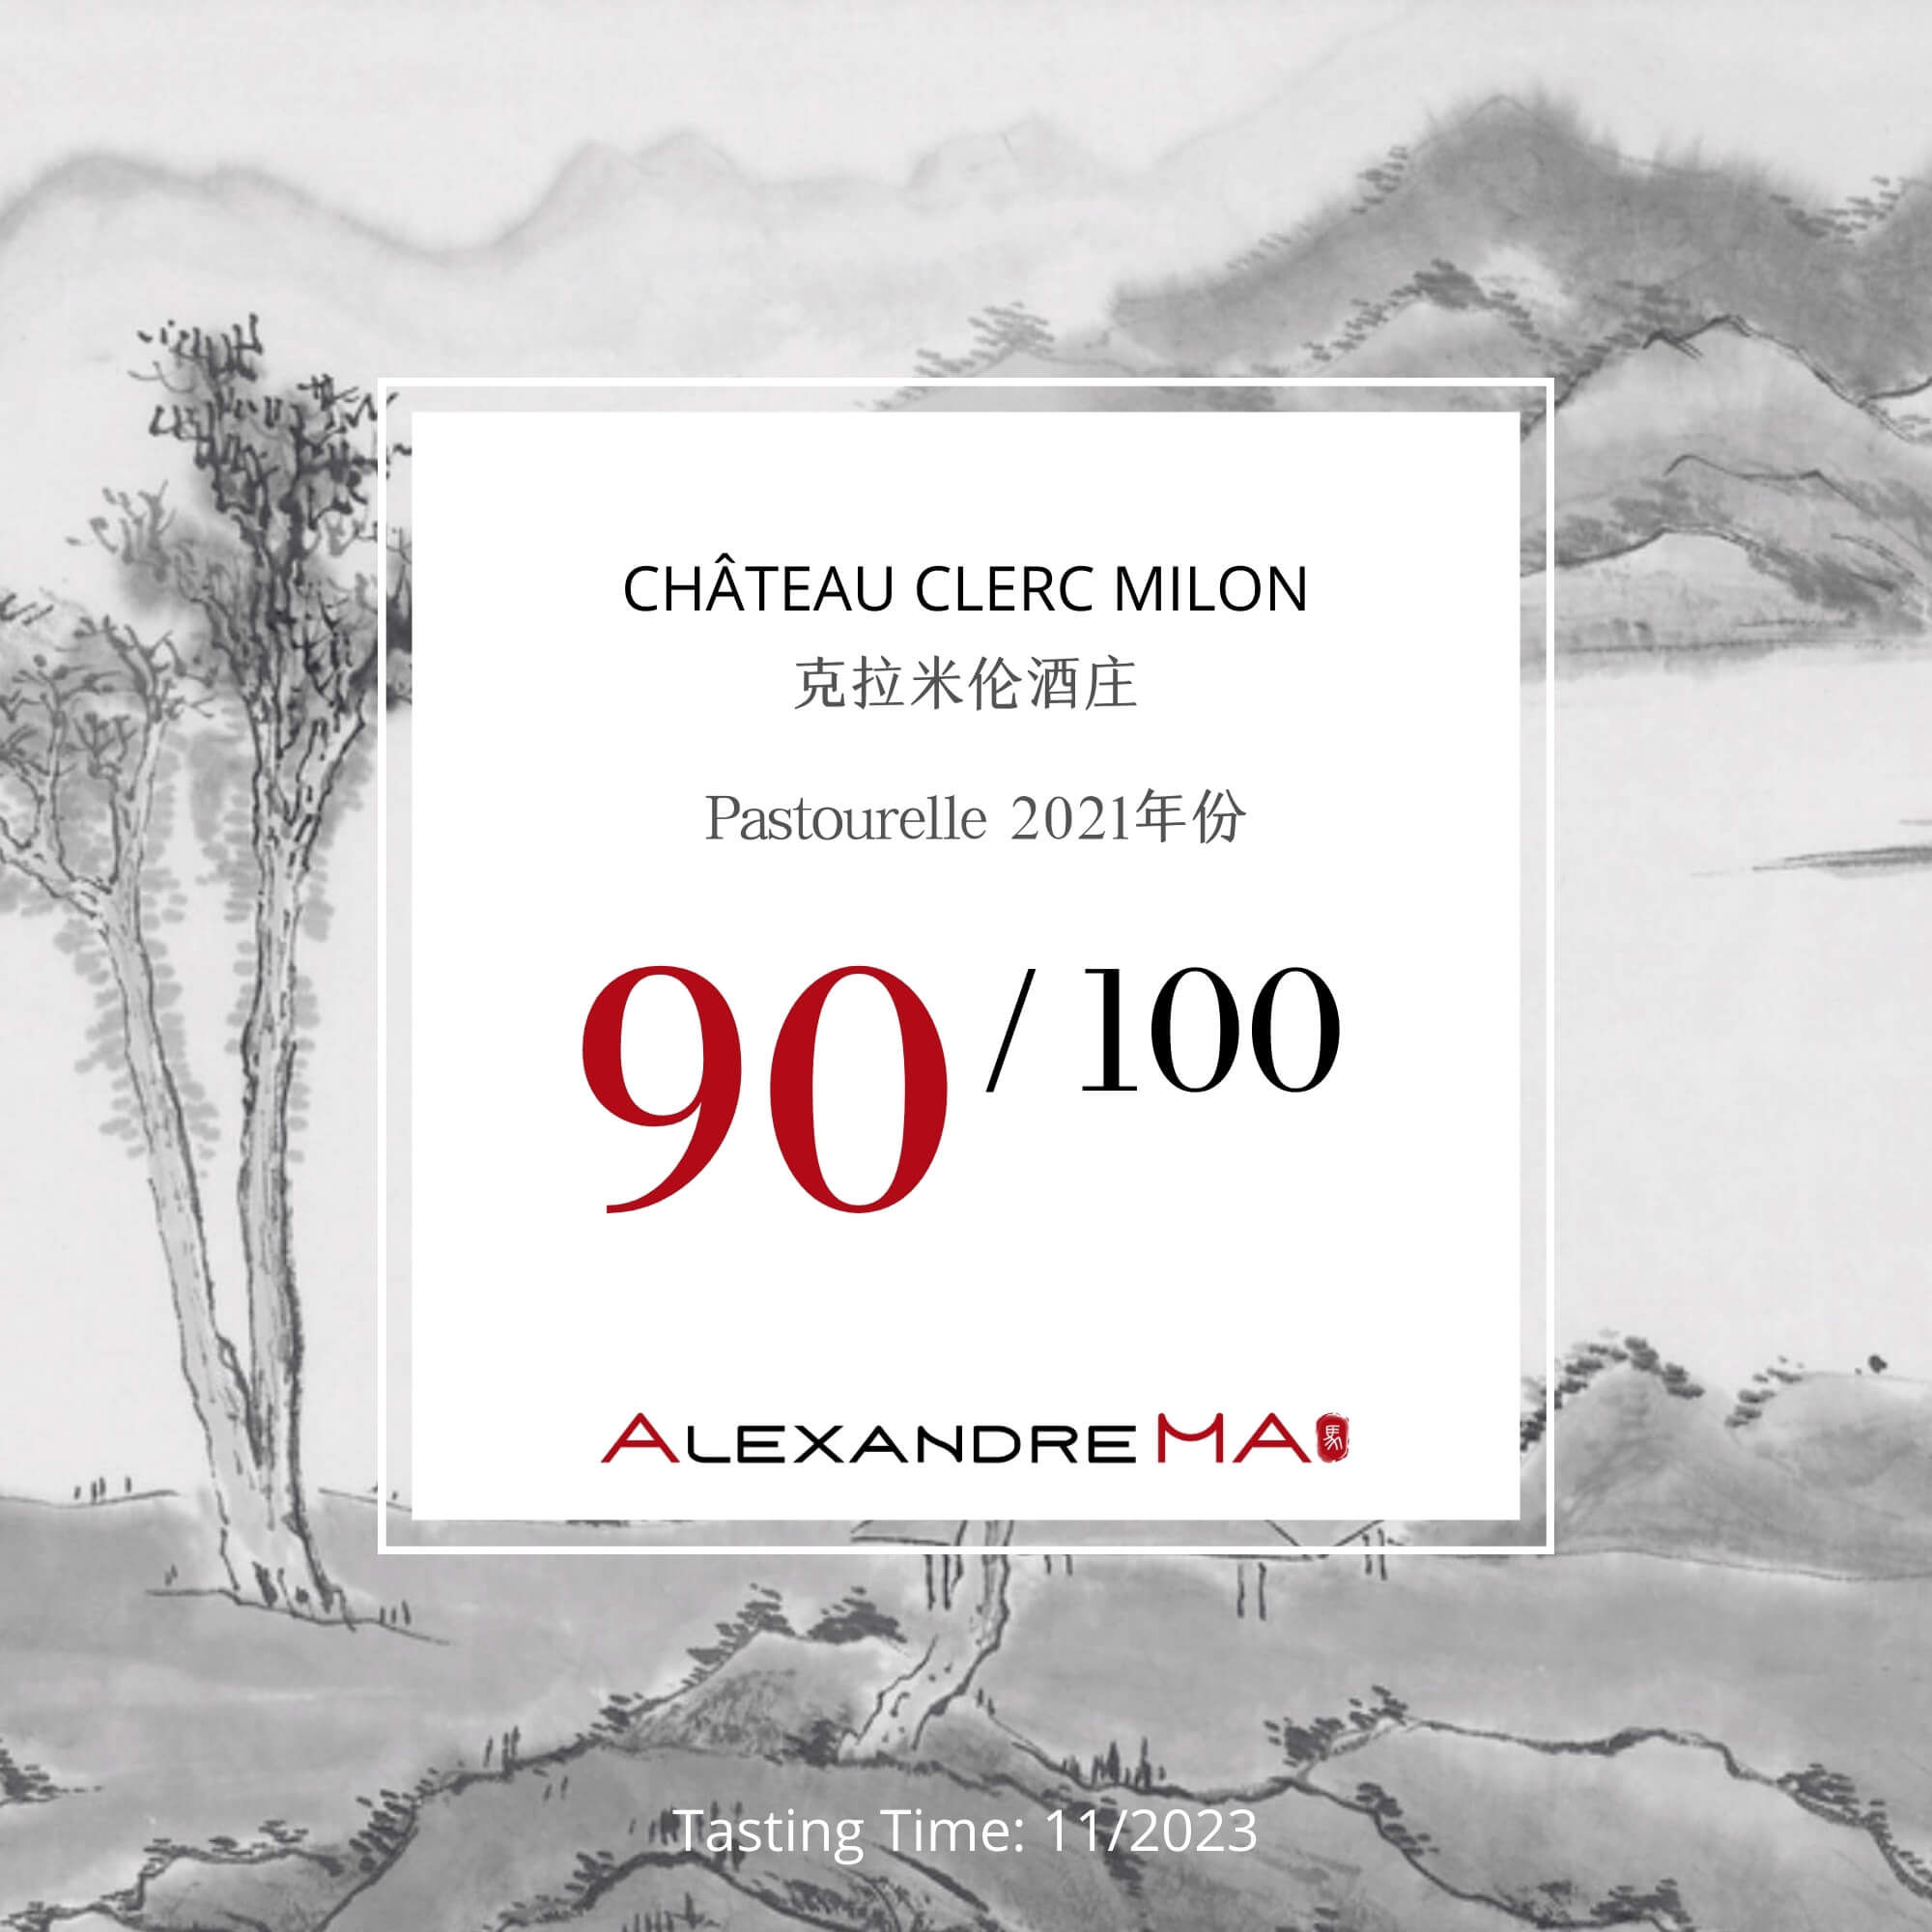 Château Clerc Milon-Pastourelle 2021 - Alexandre MA